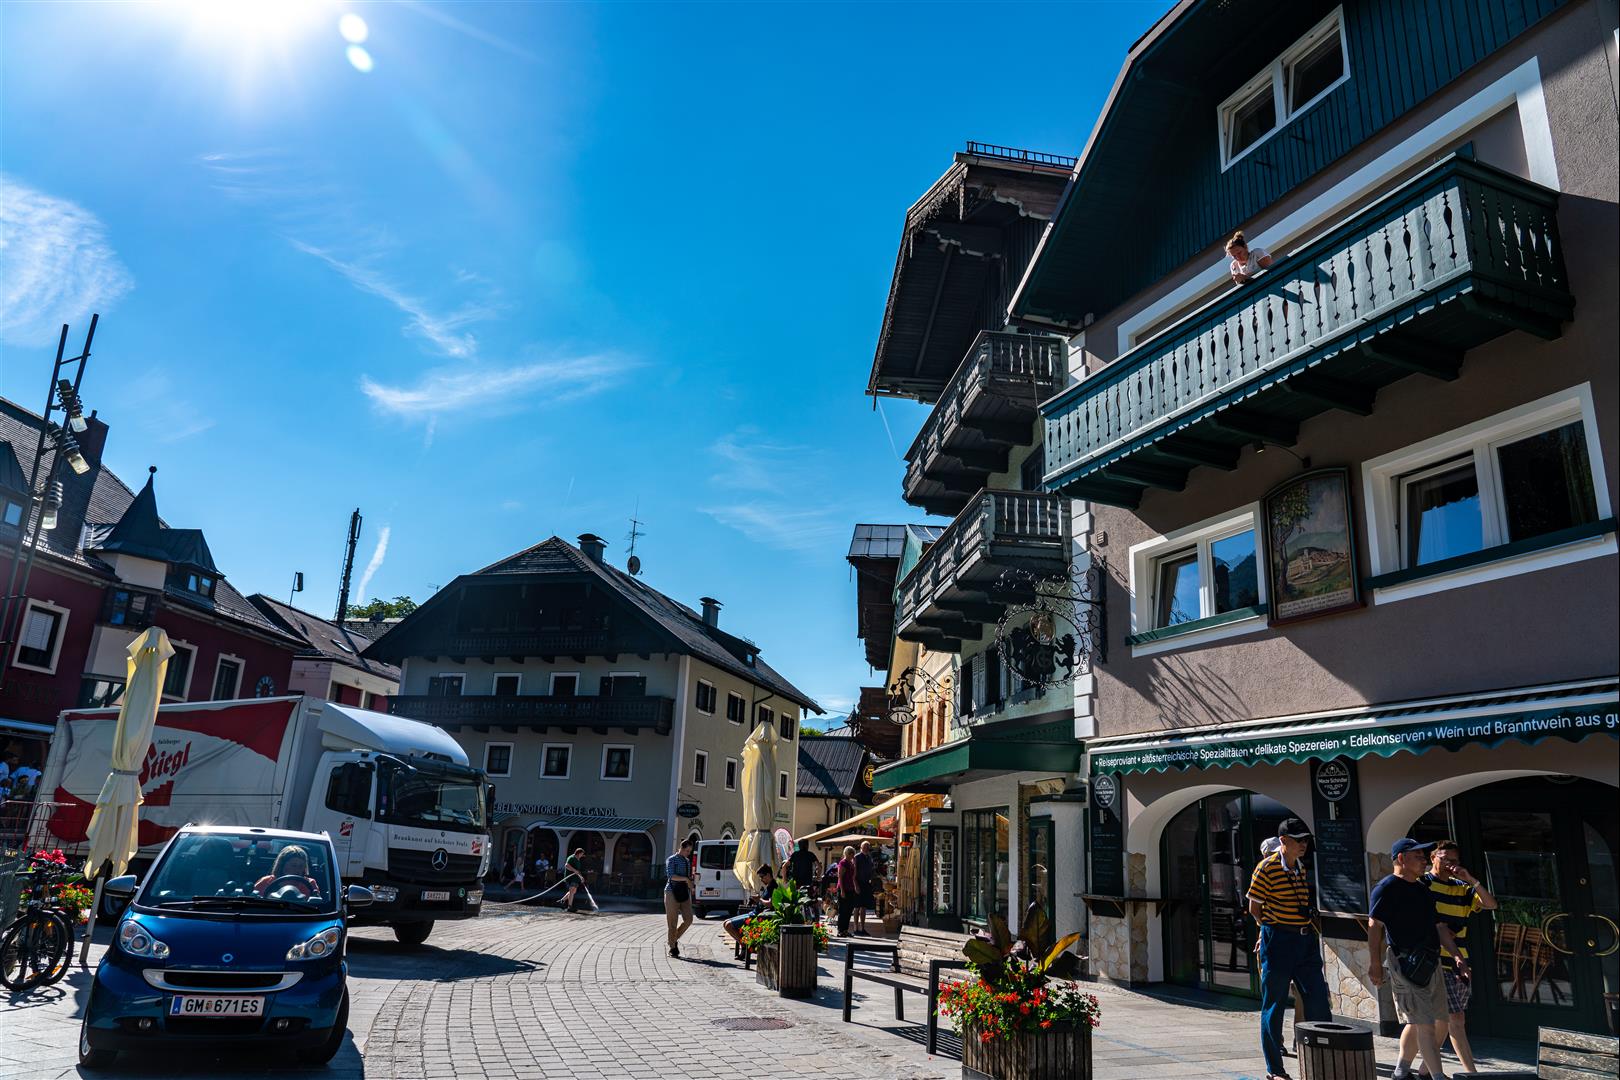 [2019 中歐攝影旅行] Day09 – 聖沃夫崗市場站 St. Wolfgang、聖沃夫崗遊湖、薩爾斯堡 Salzburg